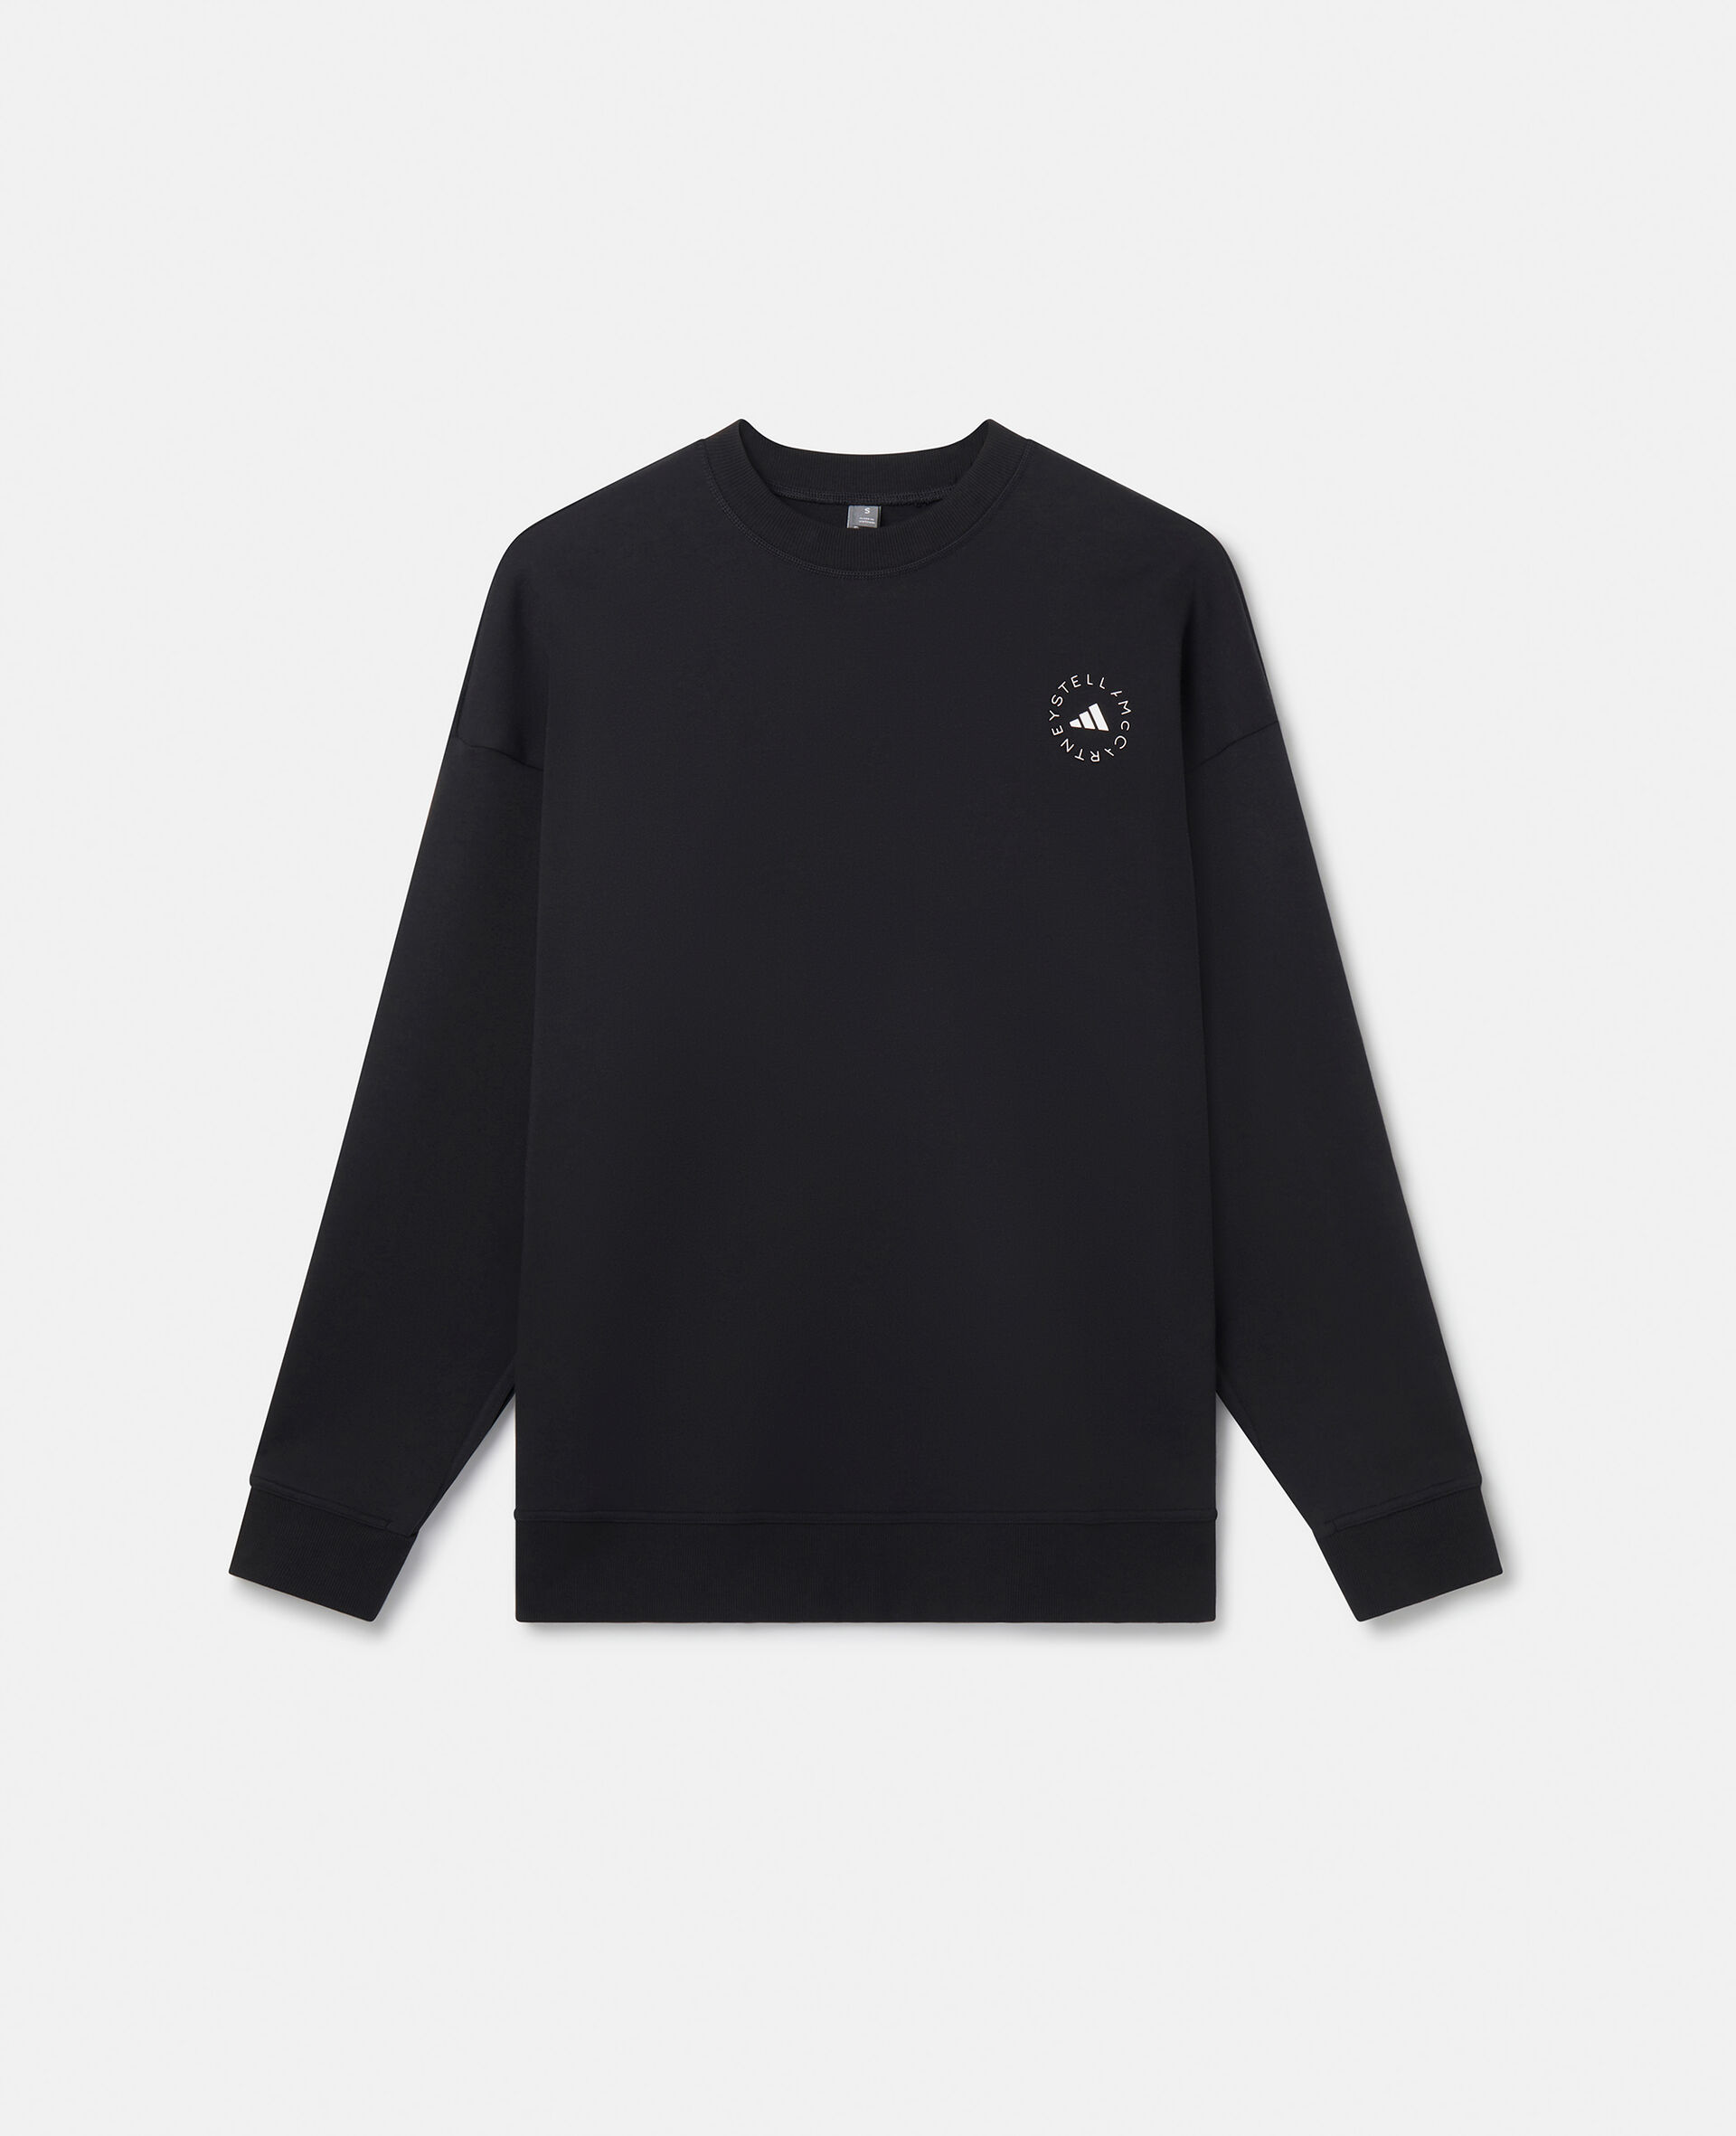 TruePurpose Split Sleeve Sweatshirt-Black-large image number 0